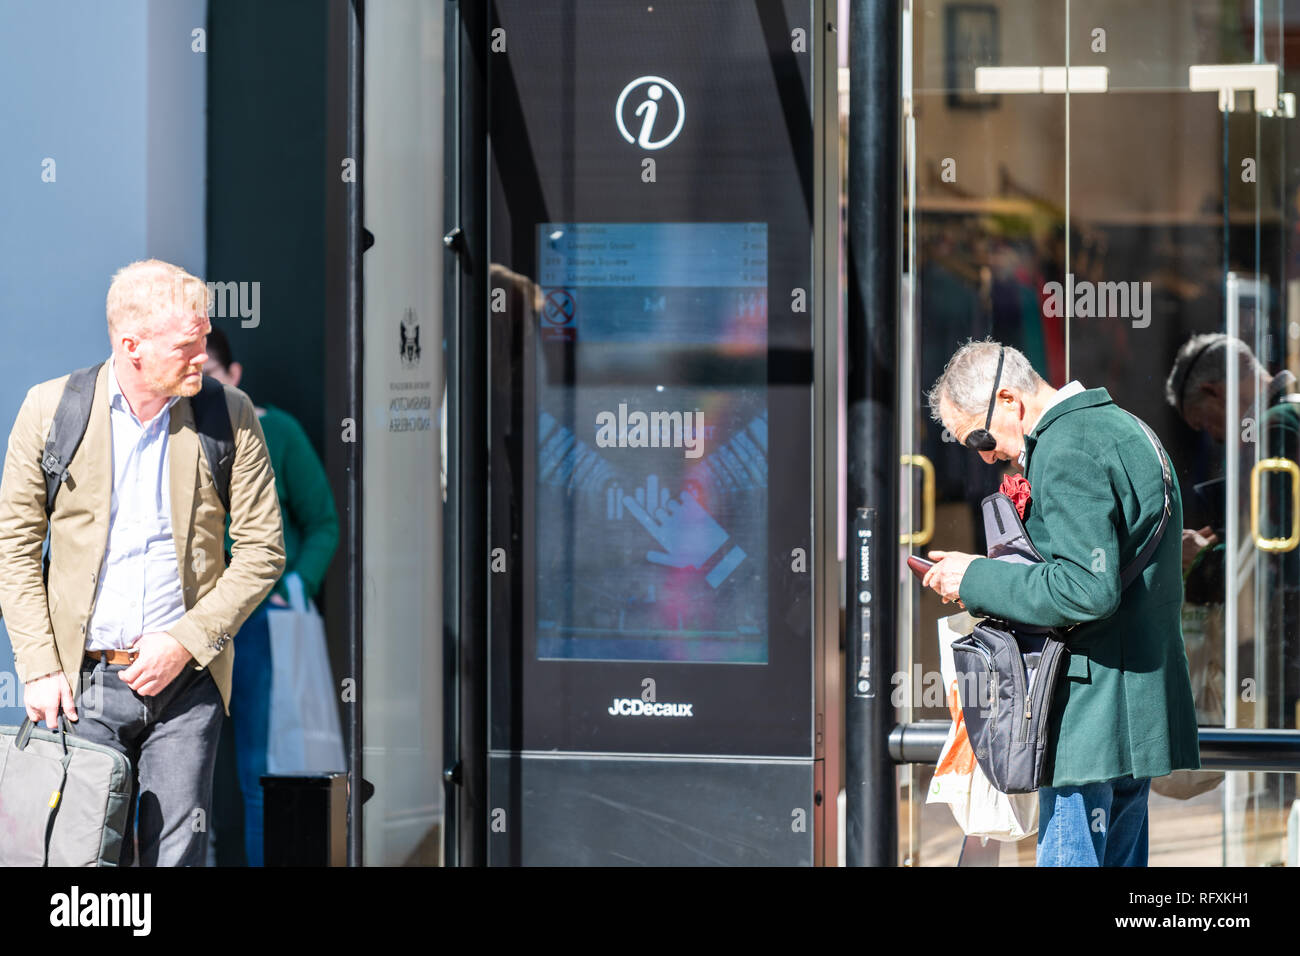 London, Regno Unito - 13 Settembre 2018: Chelsea area dello shopping con la gente che camminava sul marciapiede di strada di pedoni e segno di Jcdecaux store pubblicità comp Foto Stock